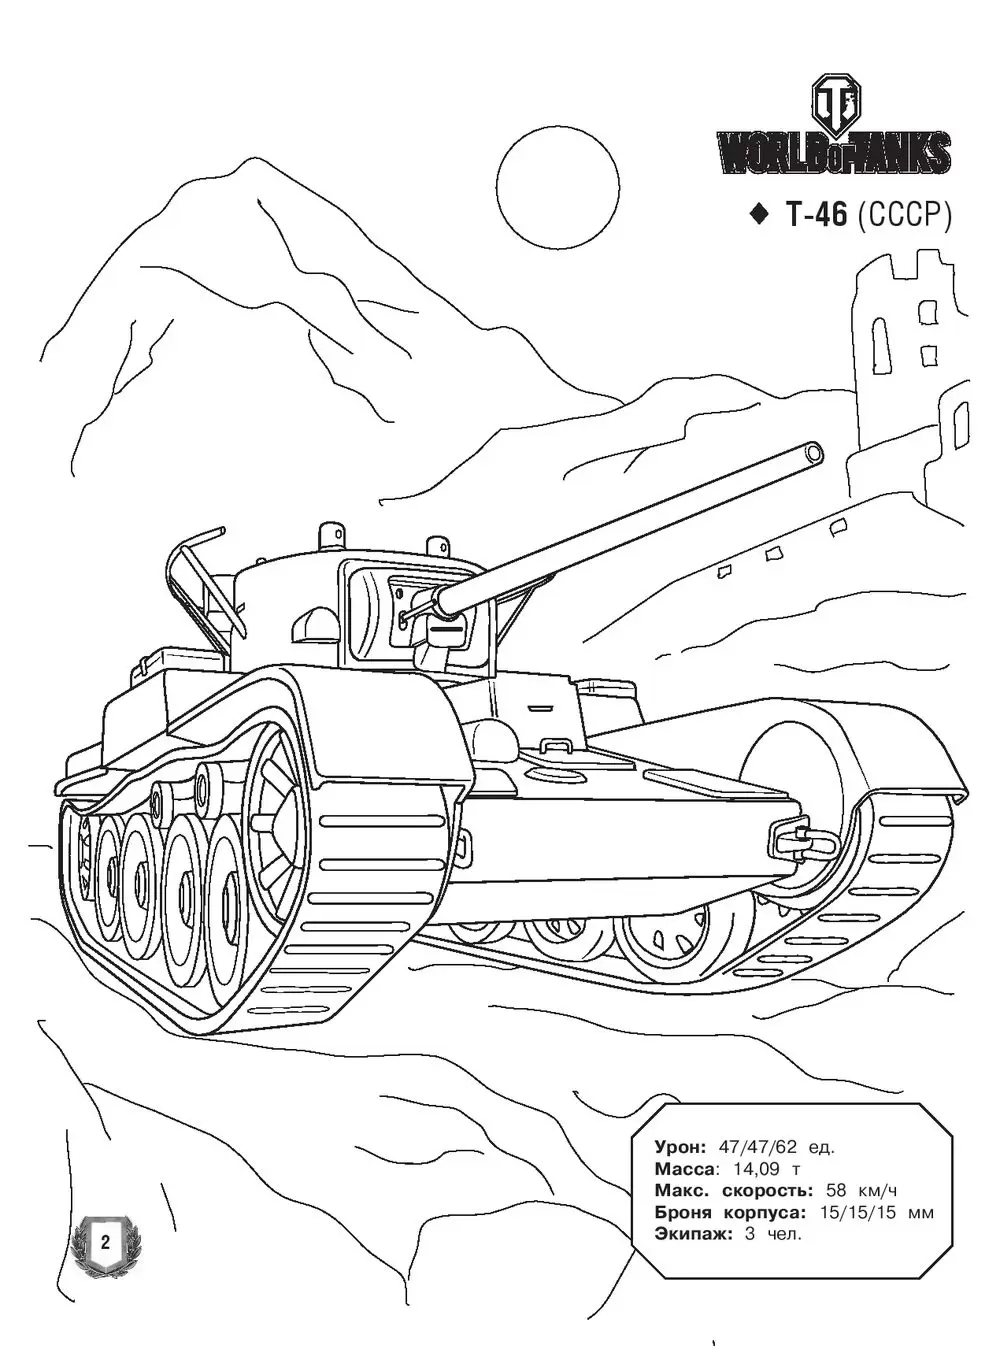 World of Tanks Раскраска Техника Германии и Японии с наклейками Аст 978-5-17-097734-5